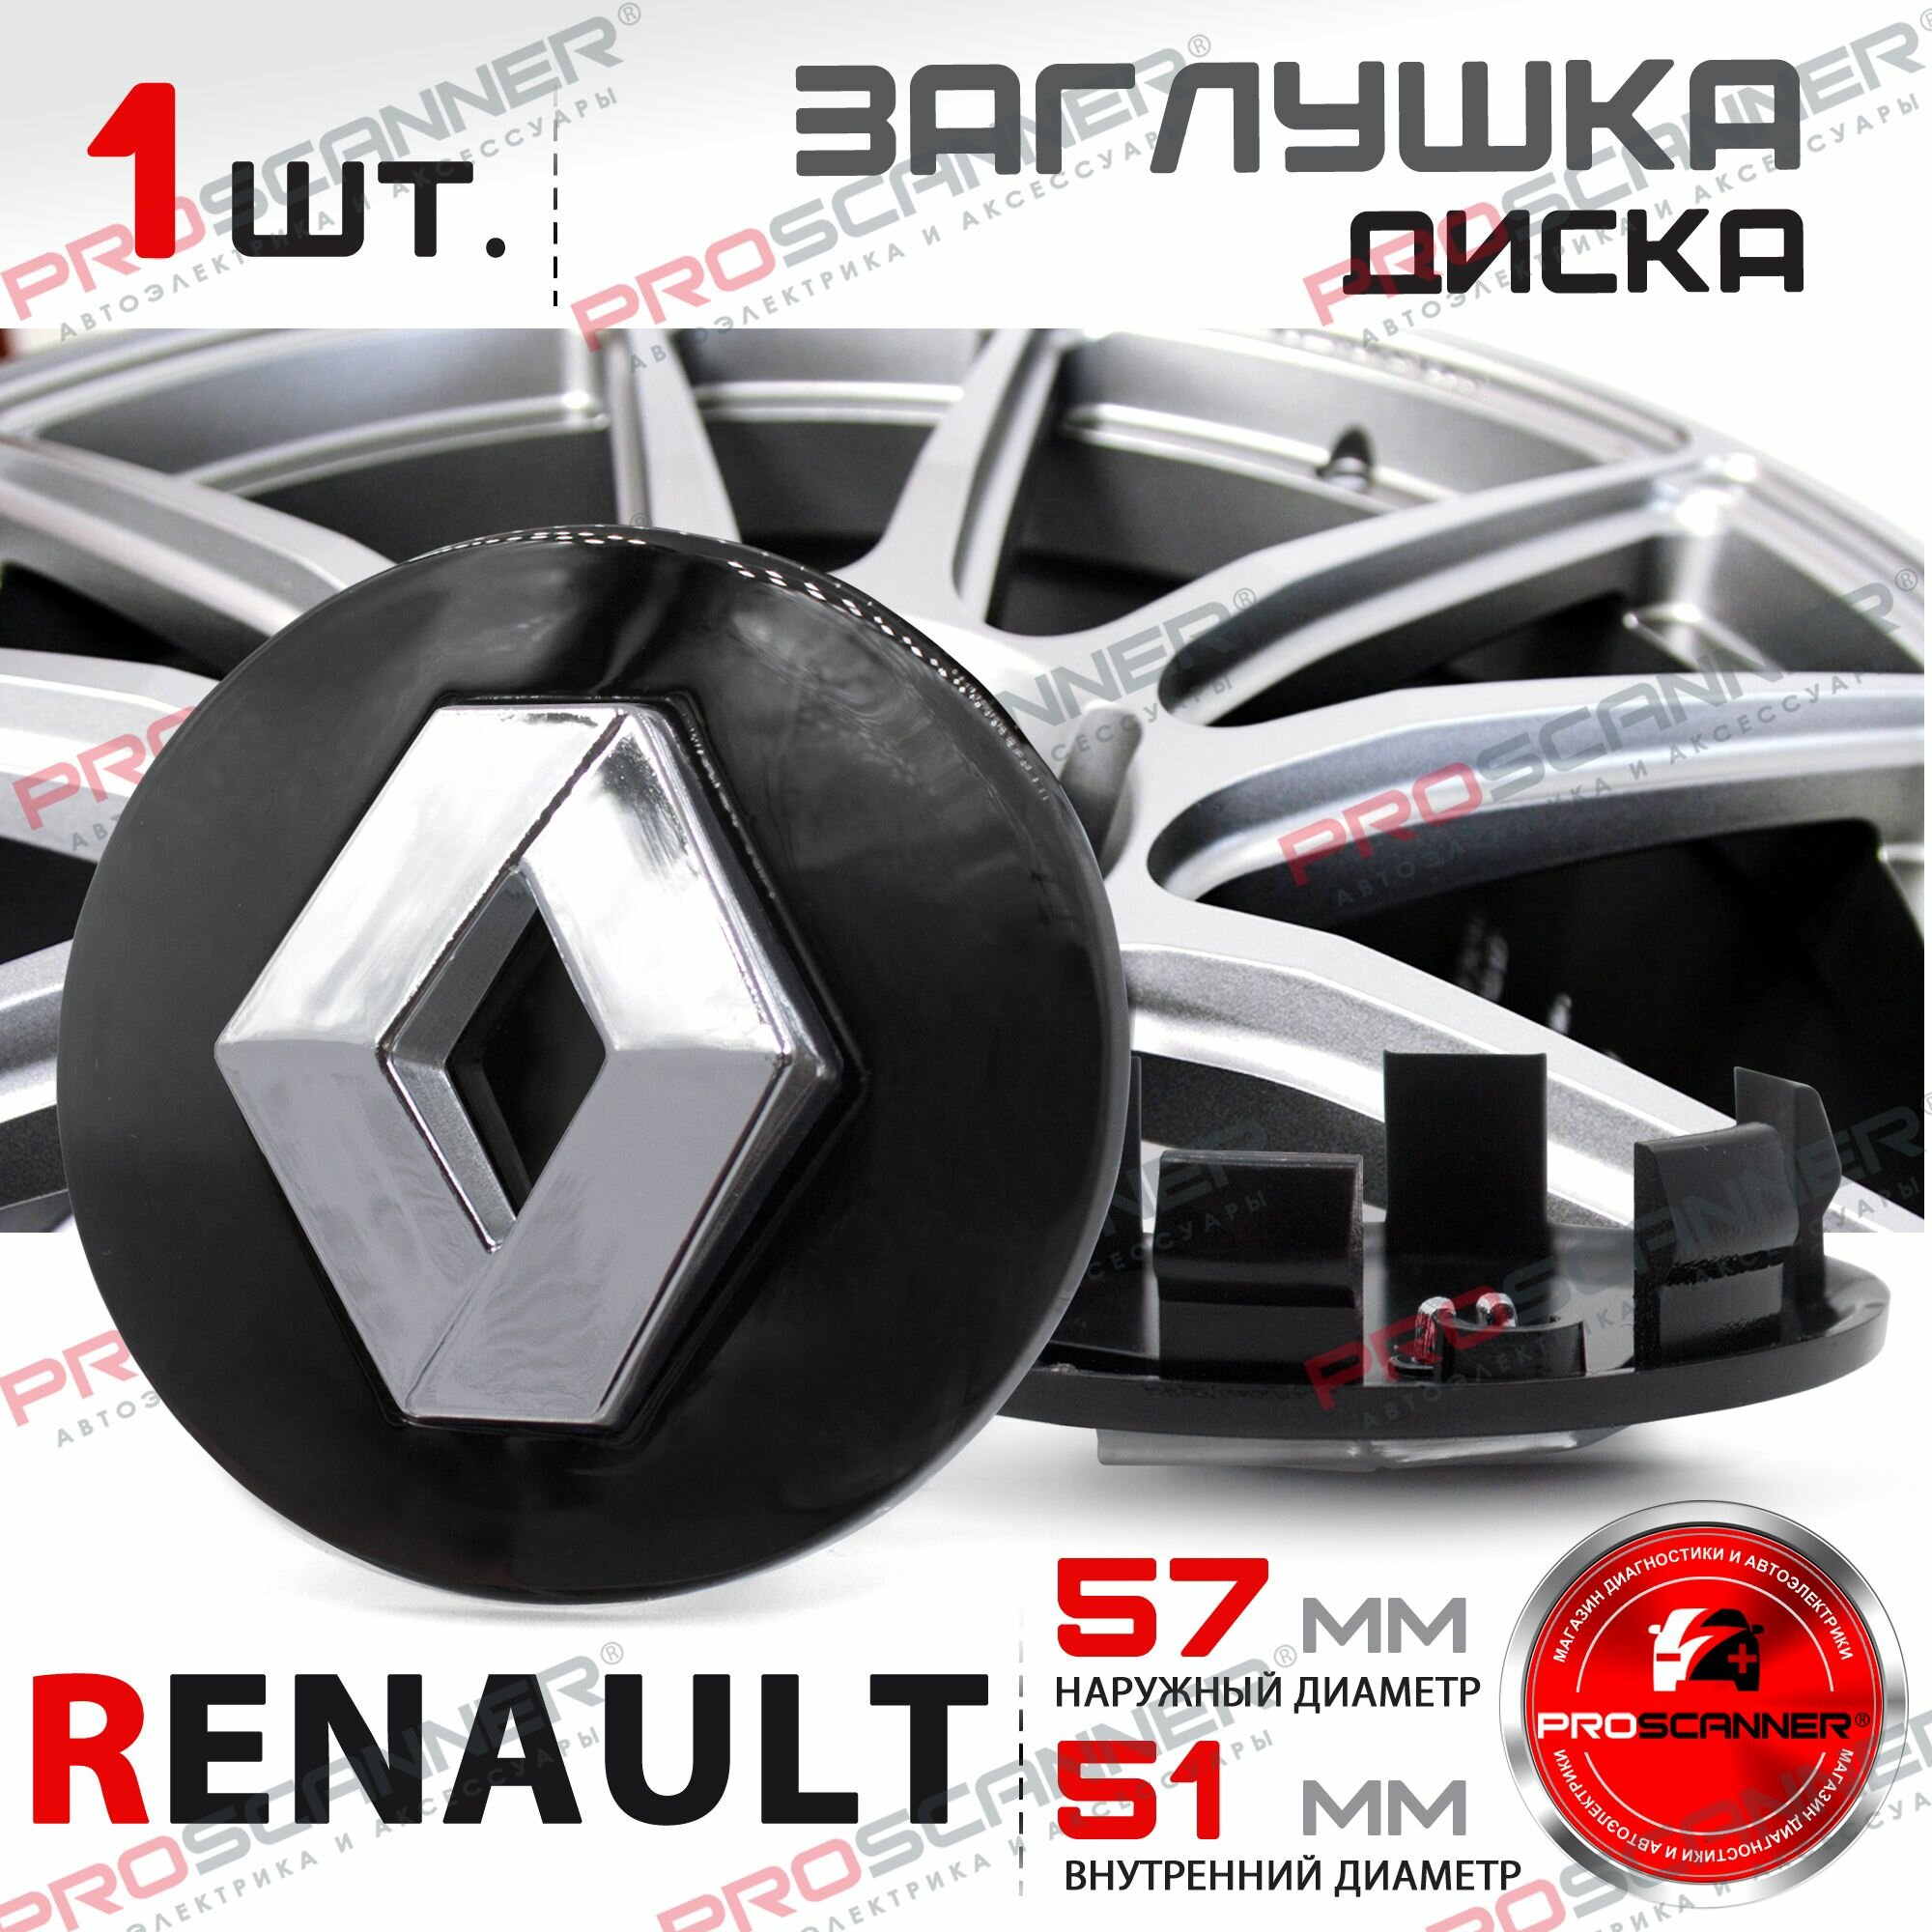 Колпачок заглушка на литой диск колеса для Renault Рено 57мм - 1 штука черный